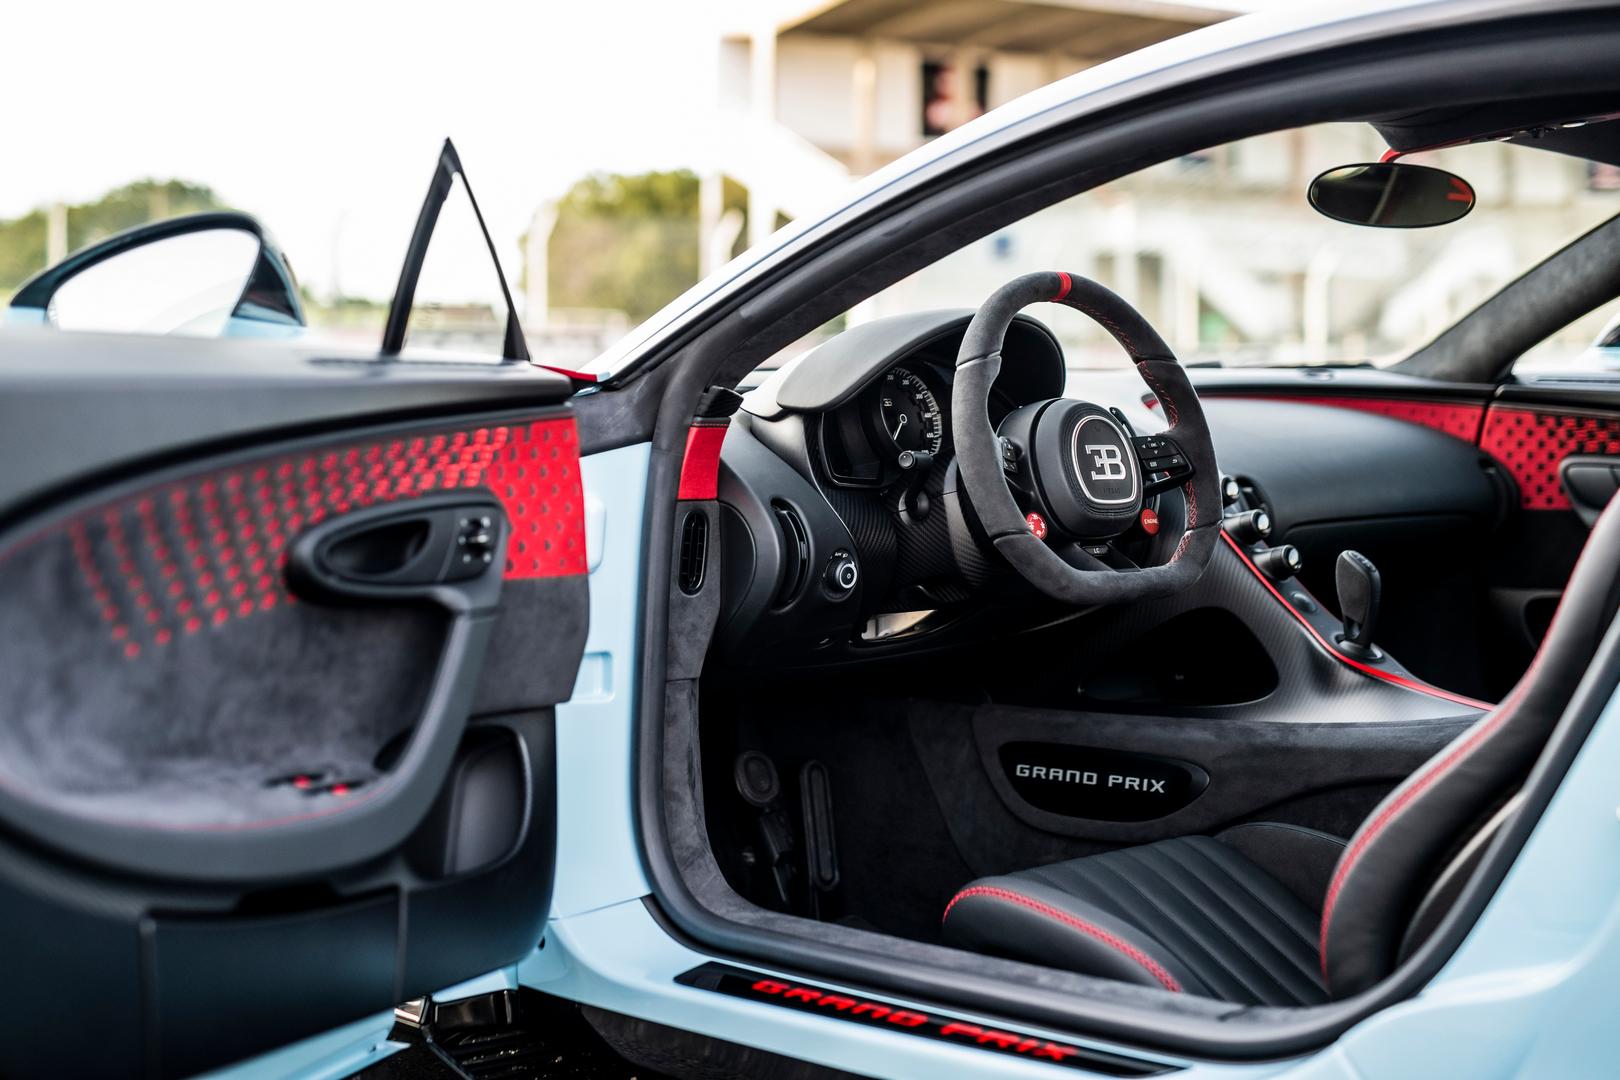 Bugatti Chiron Pur Sport interior